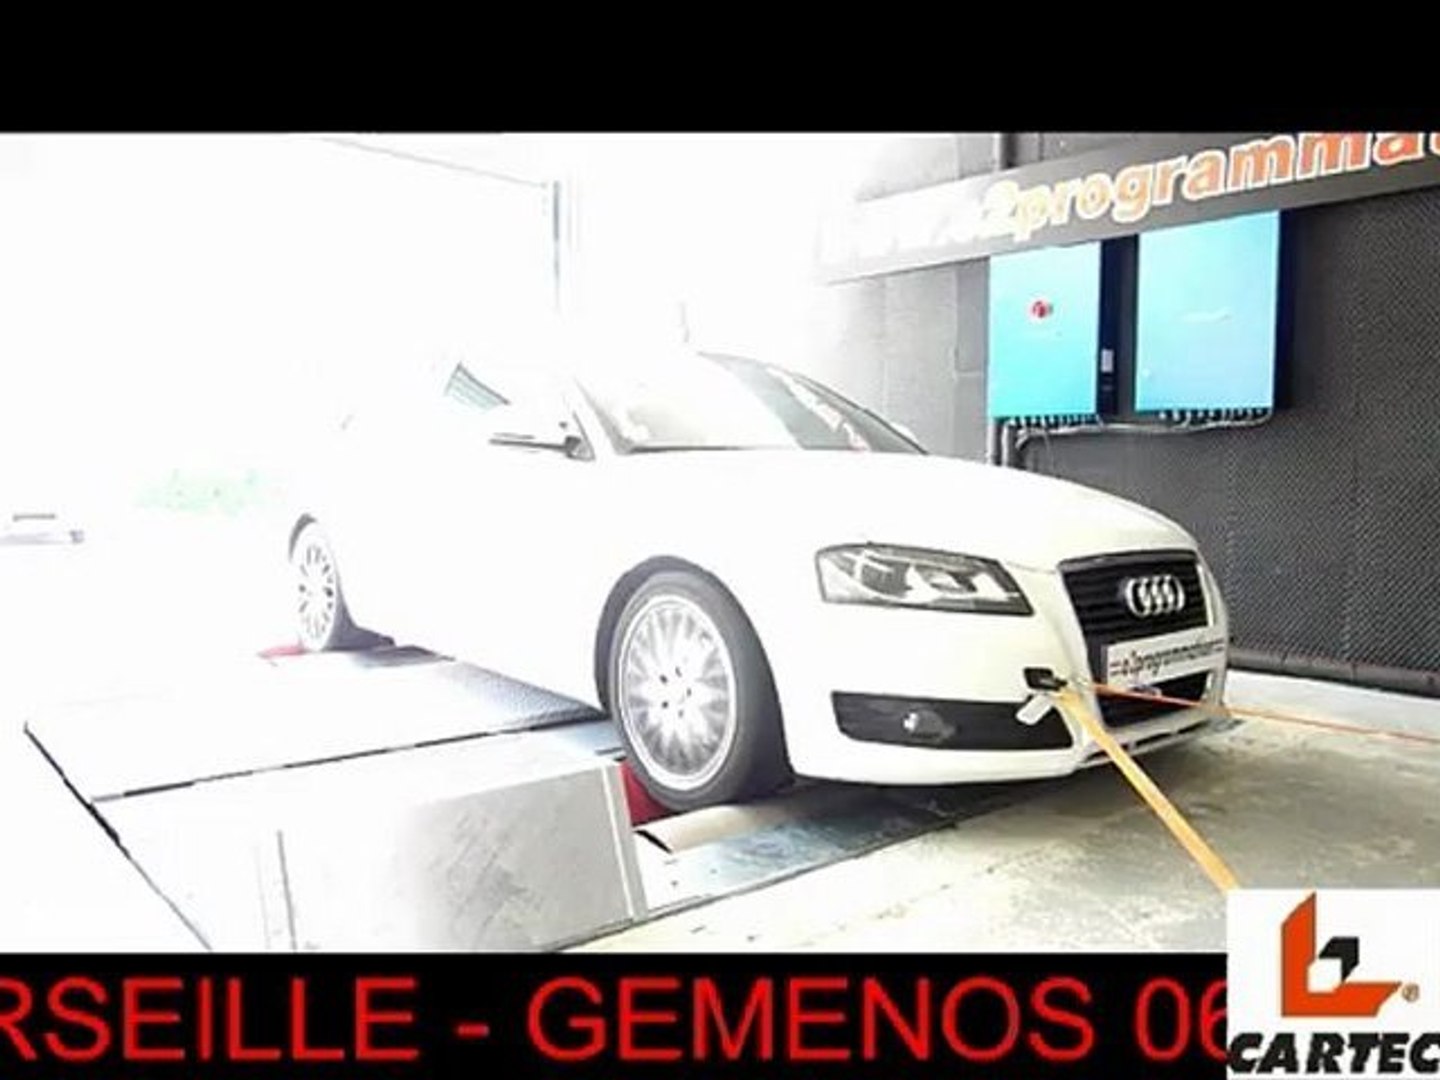 o2programmation ::: reprogrammation moteur sur banc de puissance Cartec,  Audi A3 TDI 140 chevaux o2 Marseille - gemenos - Vidéo Dailymotion